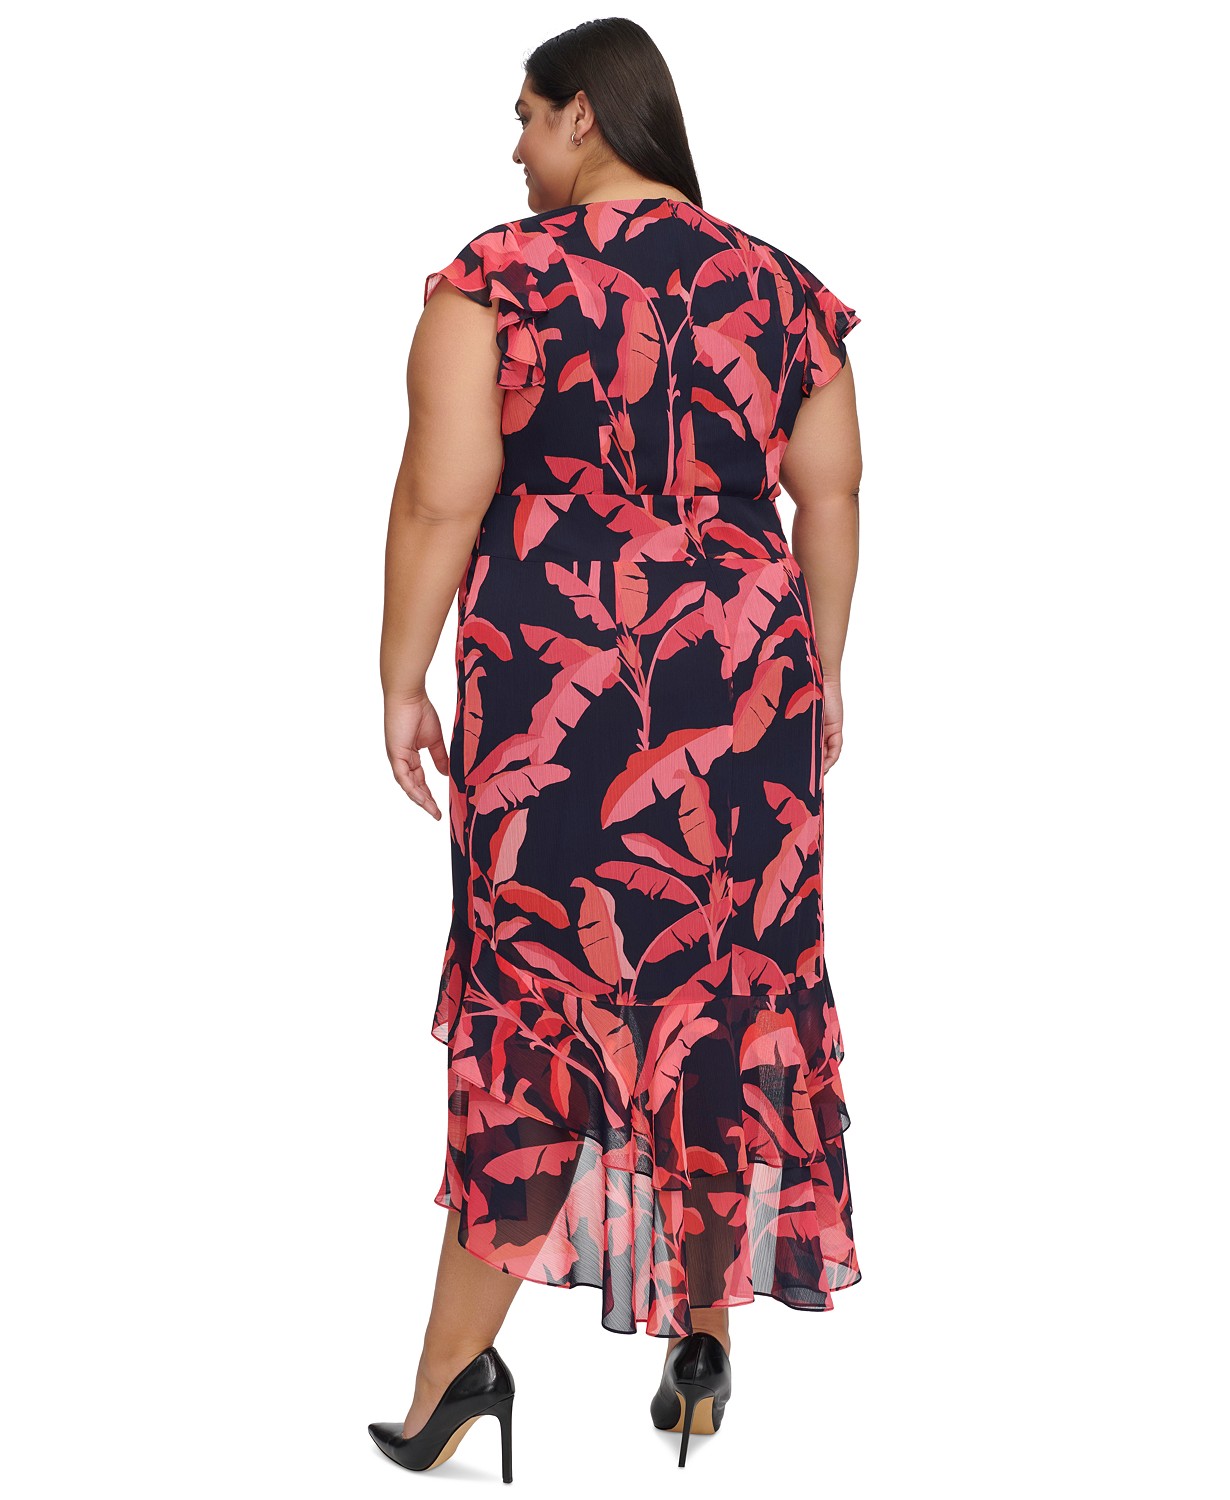 타미힐피거 Plus Size Beverley Hills Printed Midi Dress